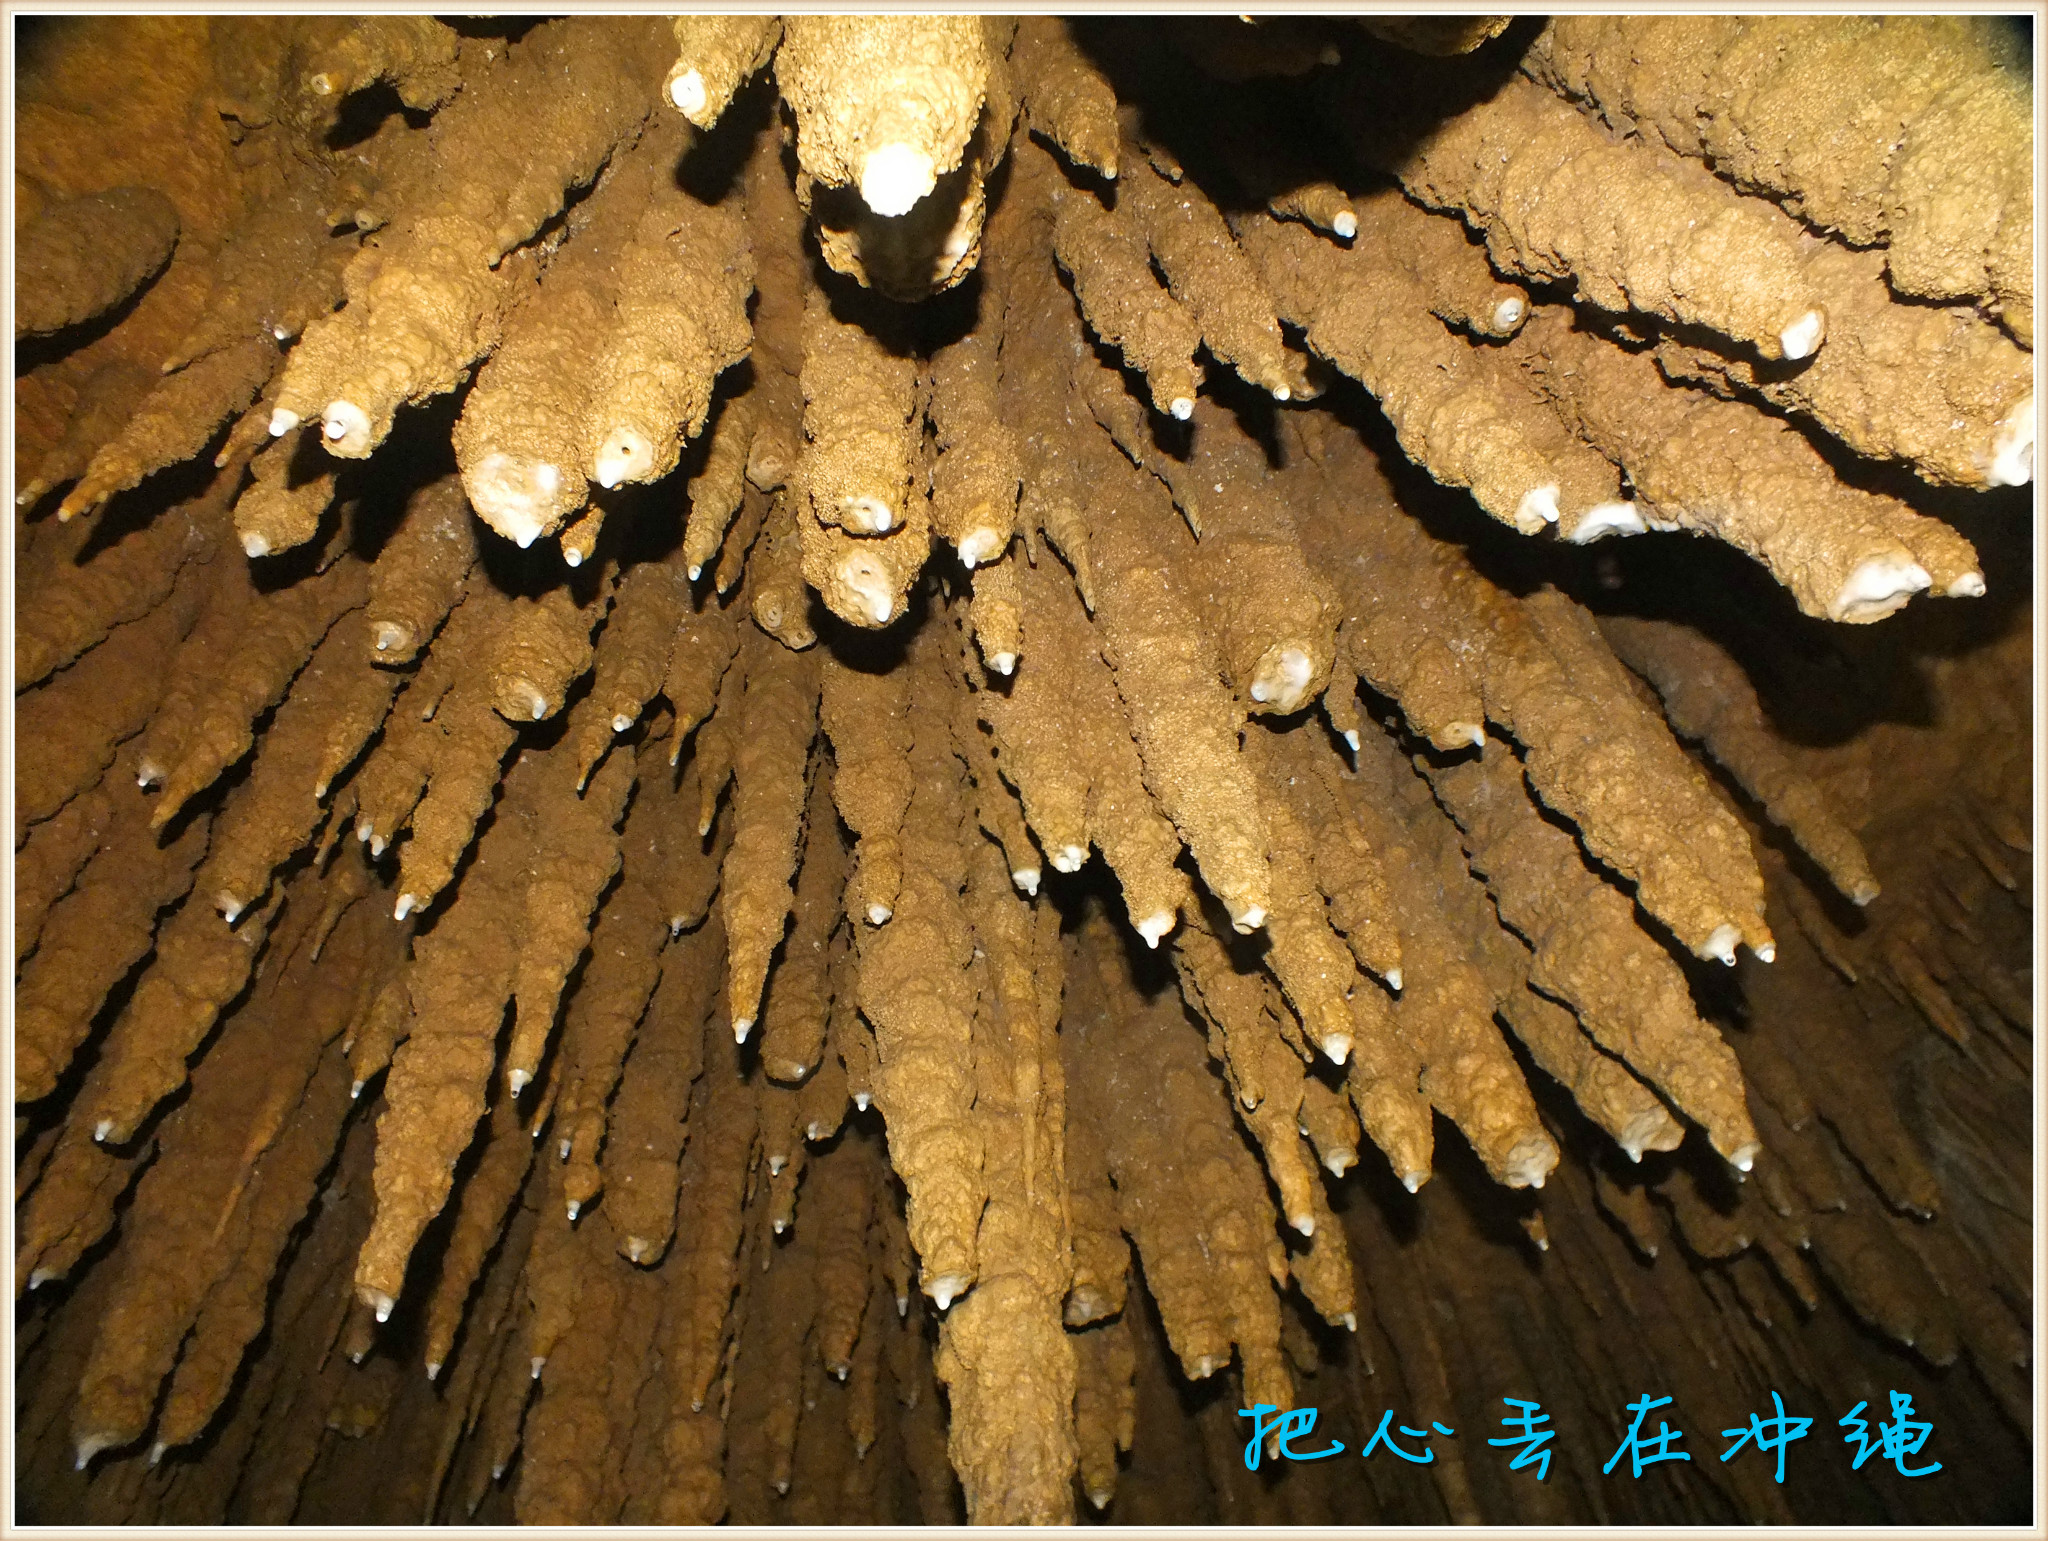 冲绳世界文化王国·玉泉洞